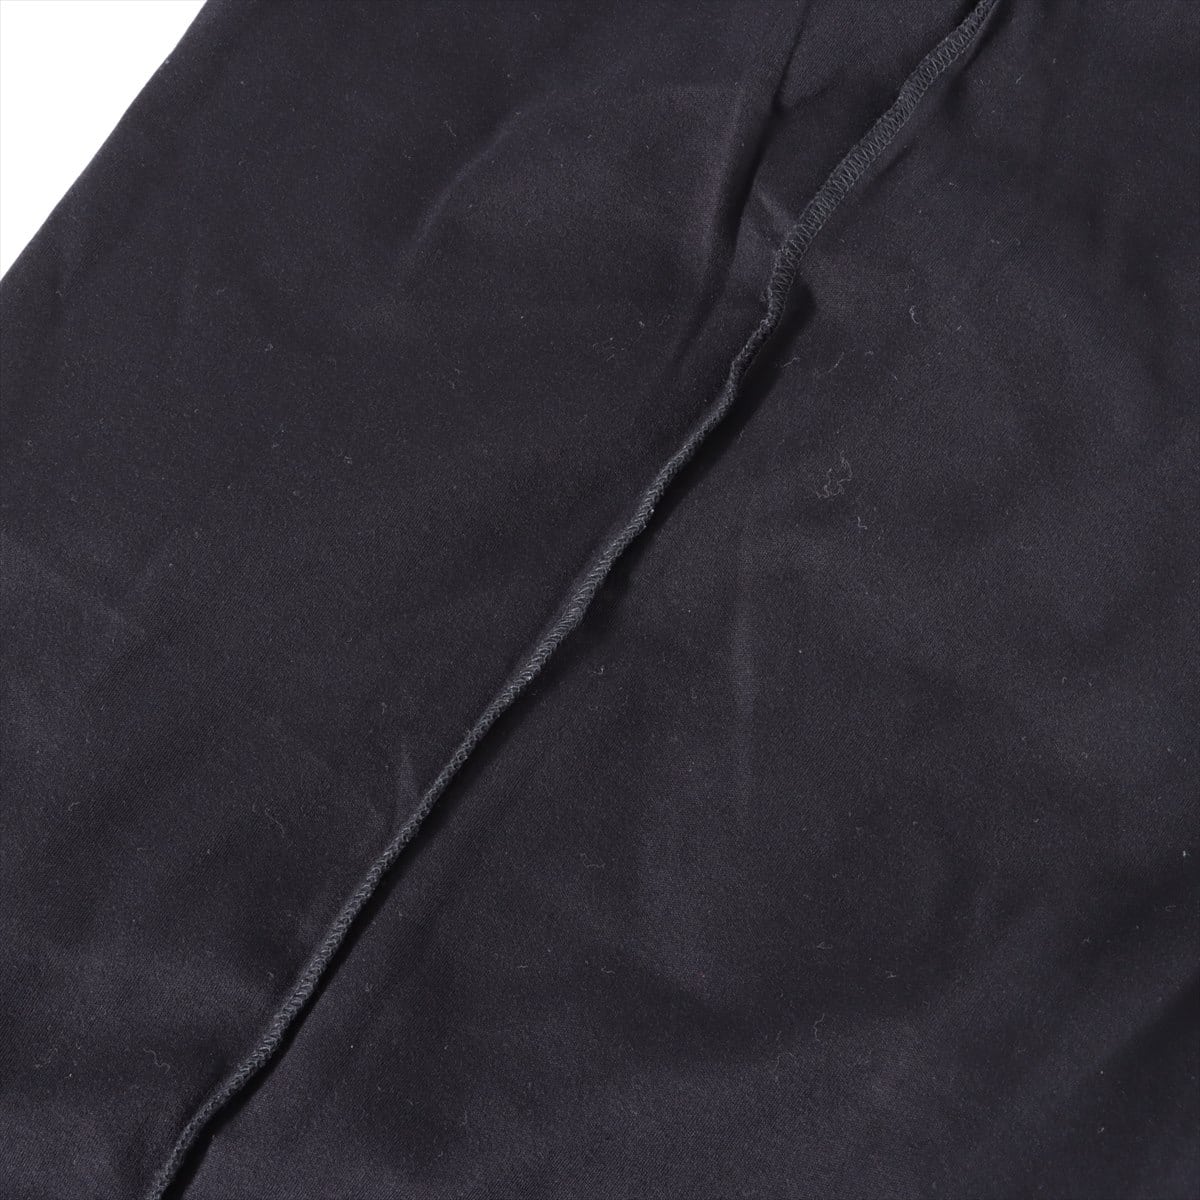 ルイヴィトン RM101M コットン Tシャツ M メンズ ブラック  バックロゴ